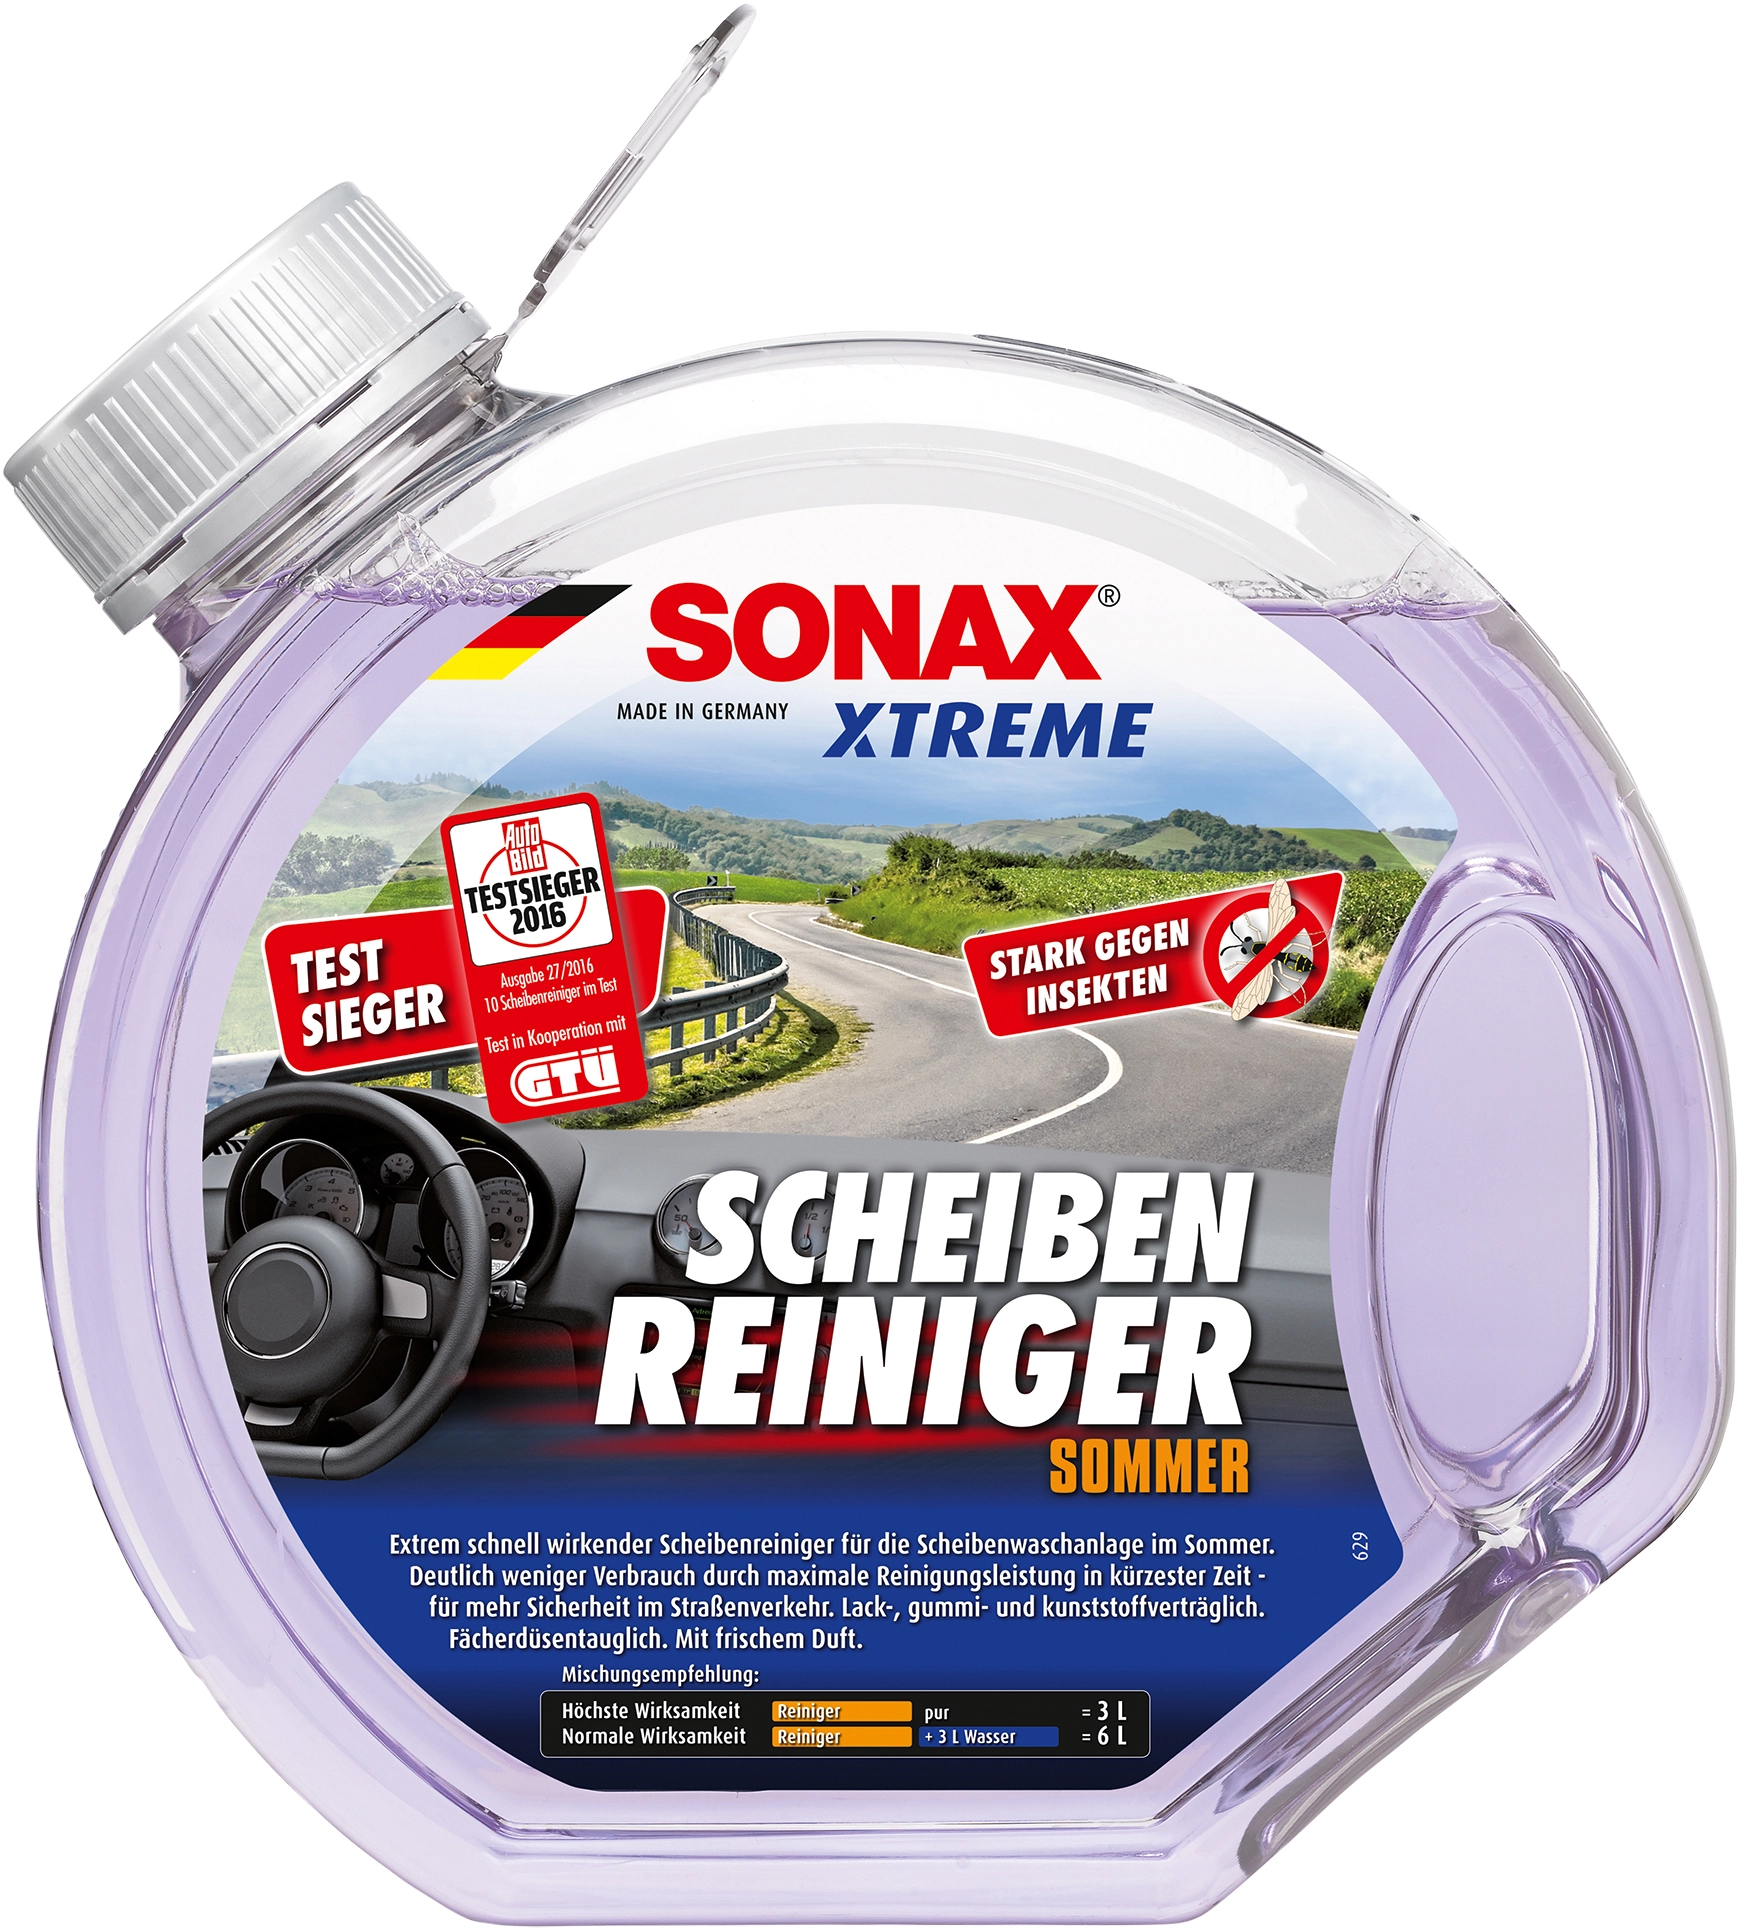 Sonax Xtreme Scheiben-Reiniger gebrauchsfertig kaufen bei OBI